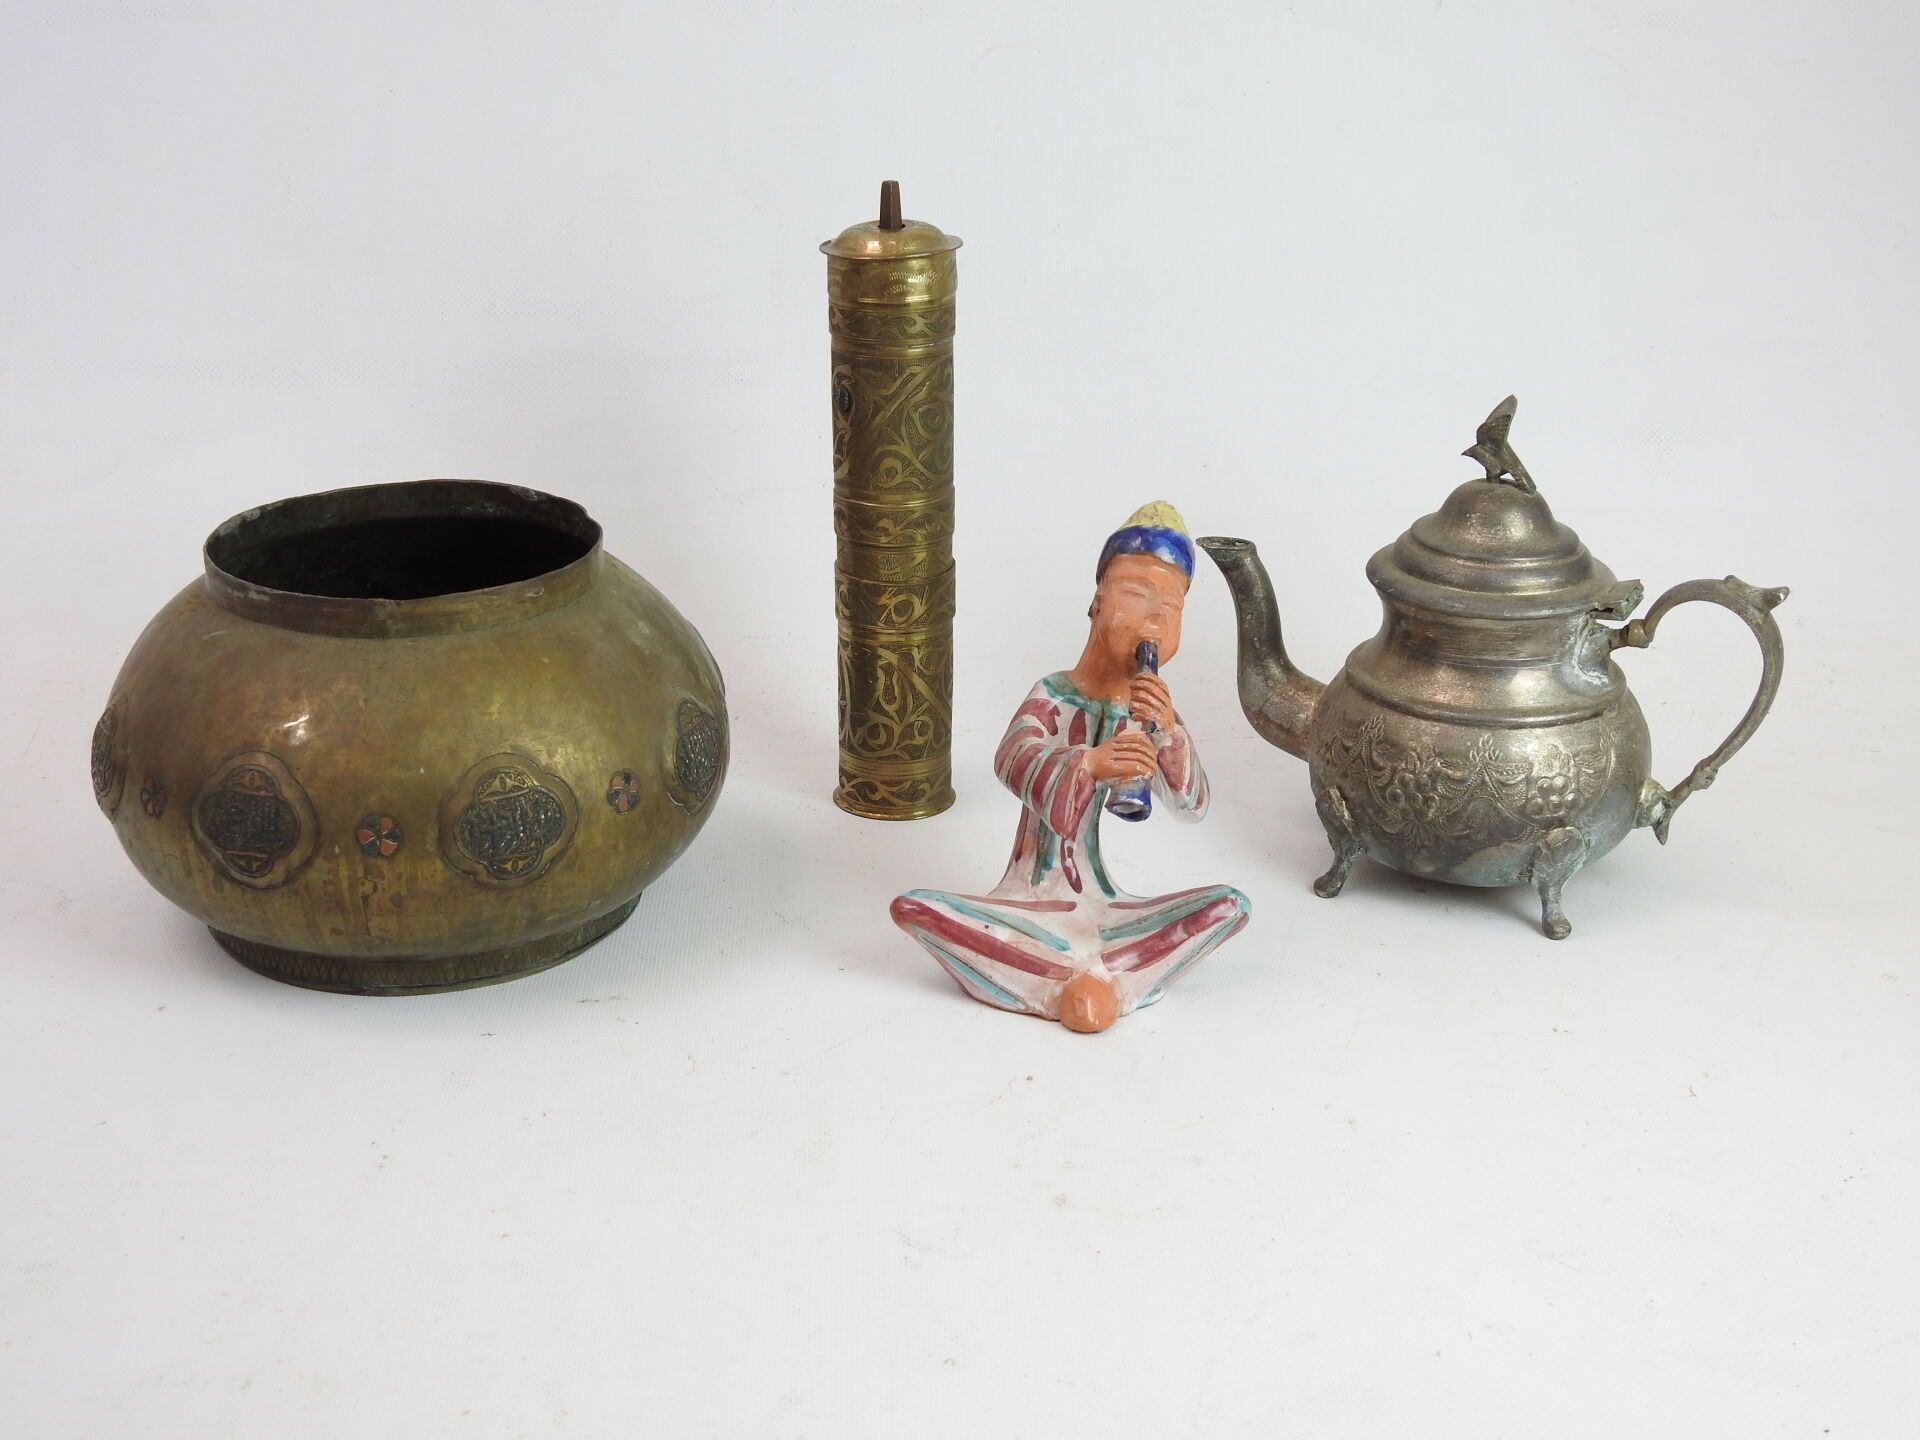 Null 北非：包括茶壶，铜制胡椒磨，圆形铜壶，扁平的壶身饰有奖章（13 x 20厘米），珐琅彩陶器主题代表一个吹笛者。磨损和撕裂